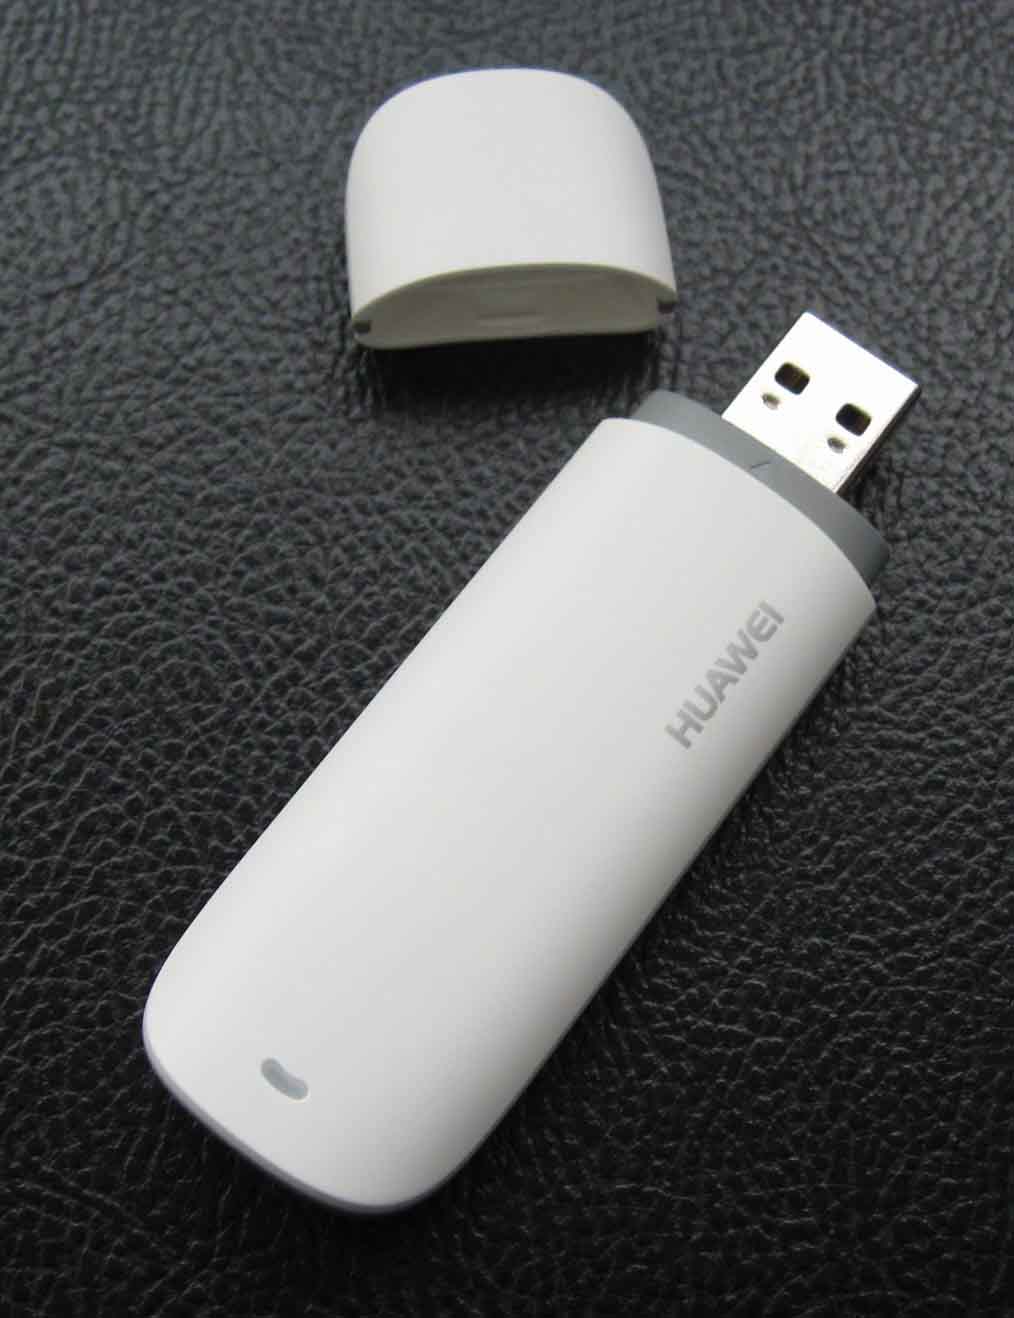 3G Aircard Huawei E173 USB Modem 1